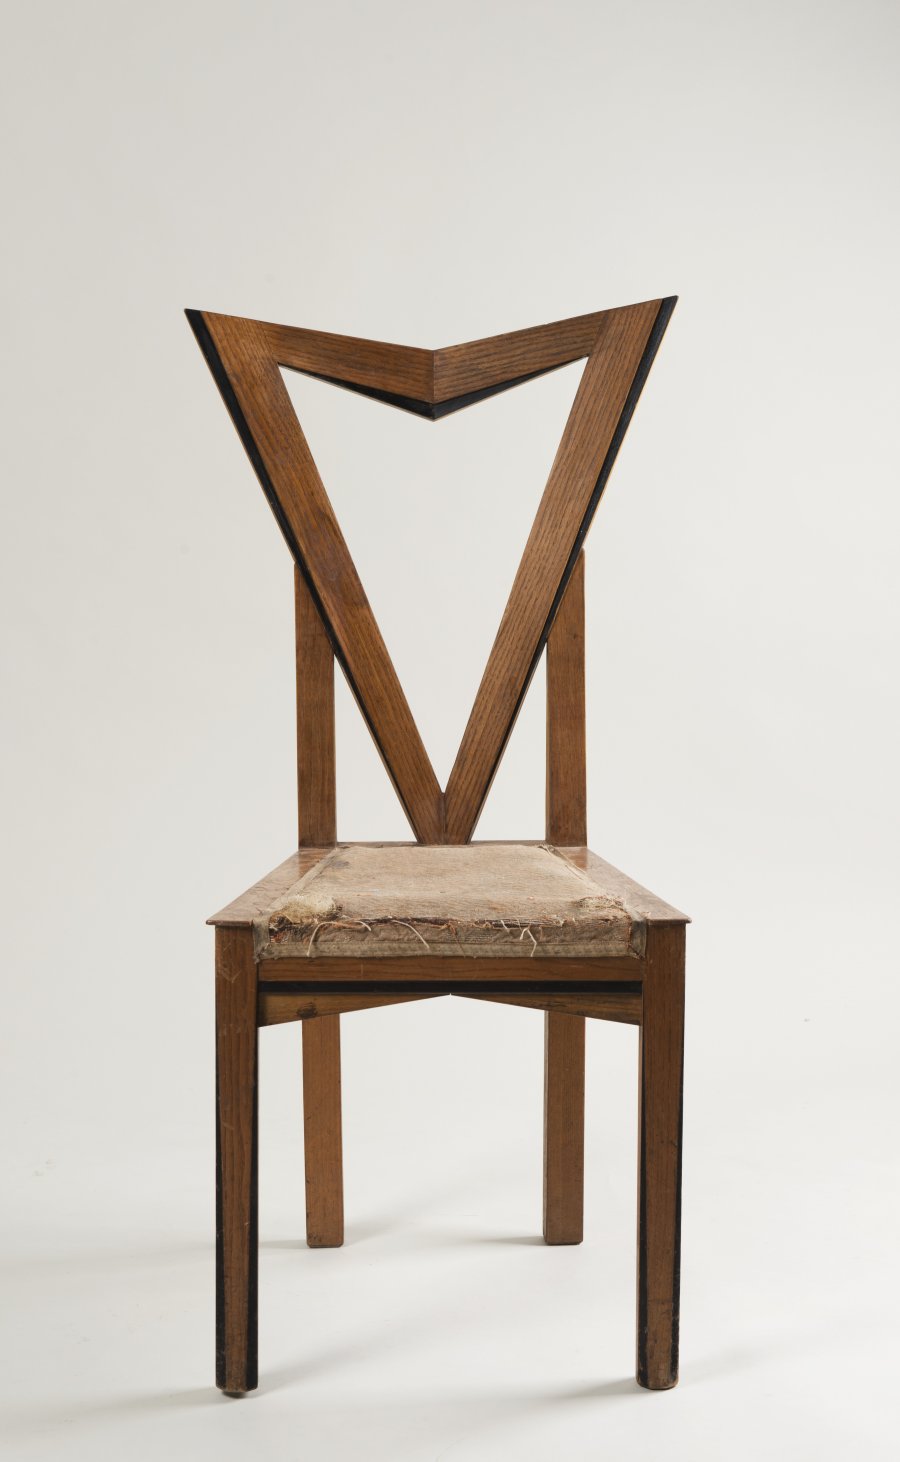 A Cubist Chair